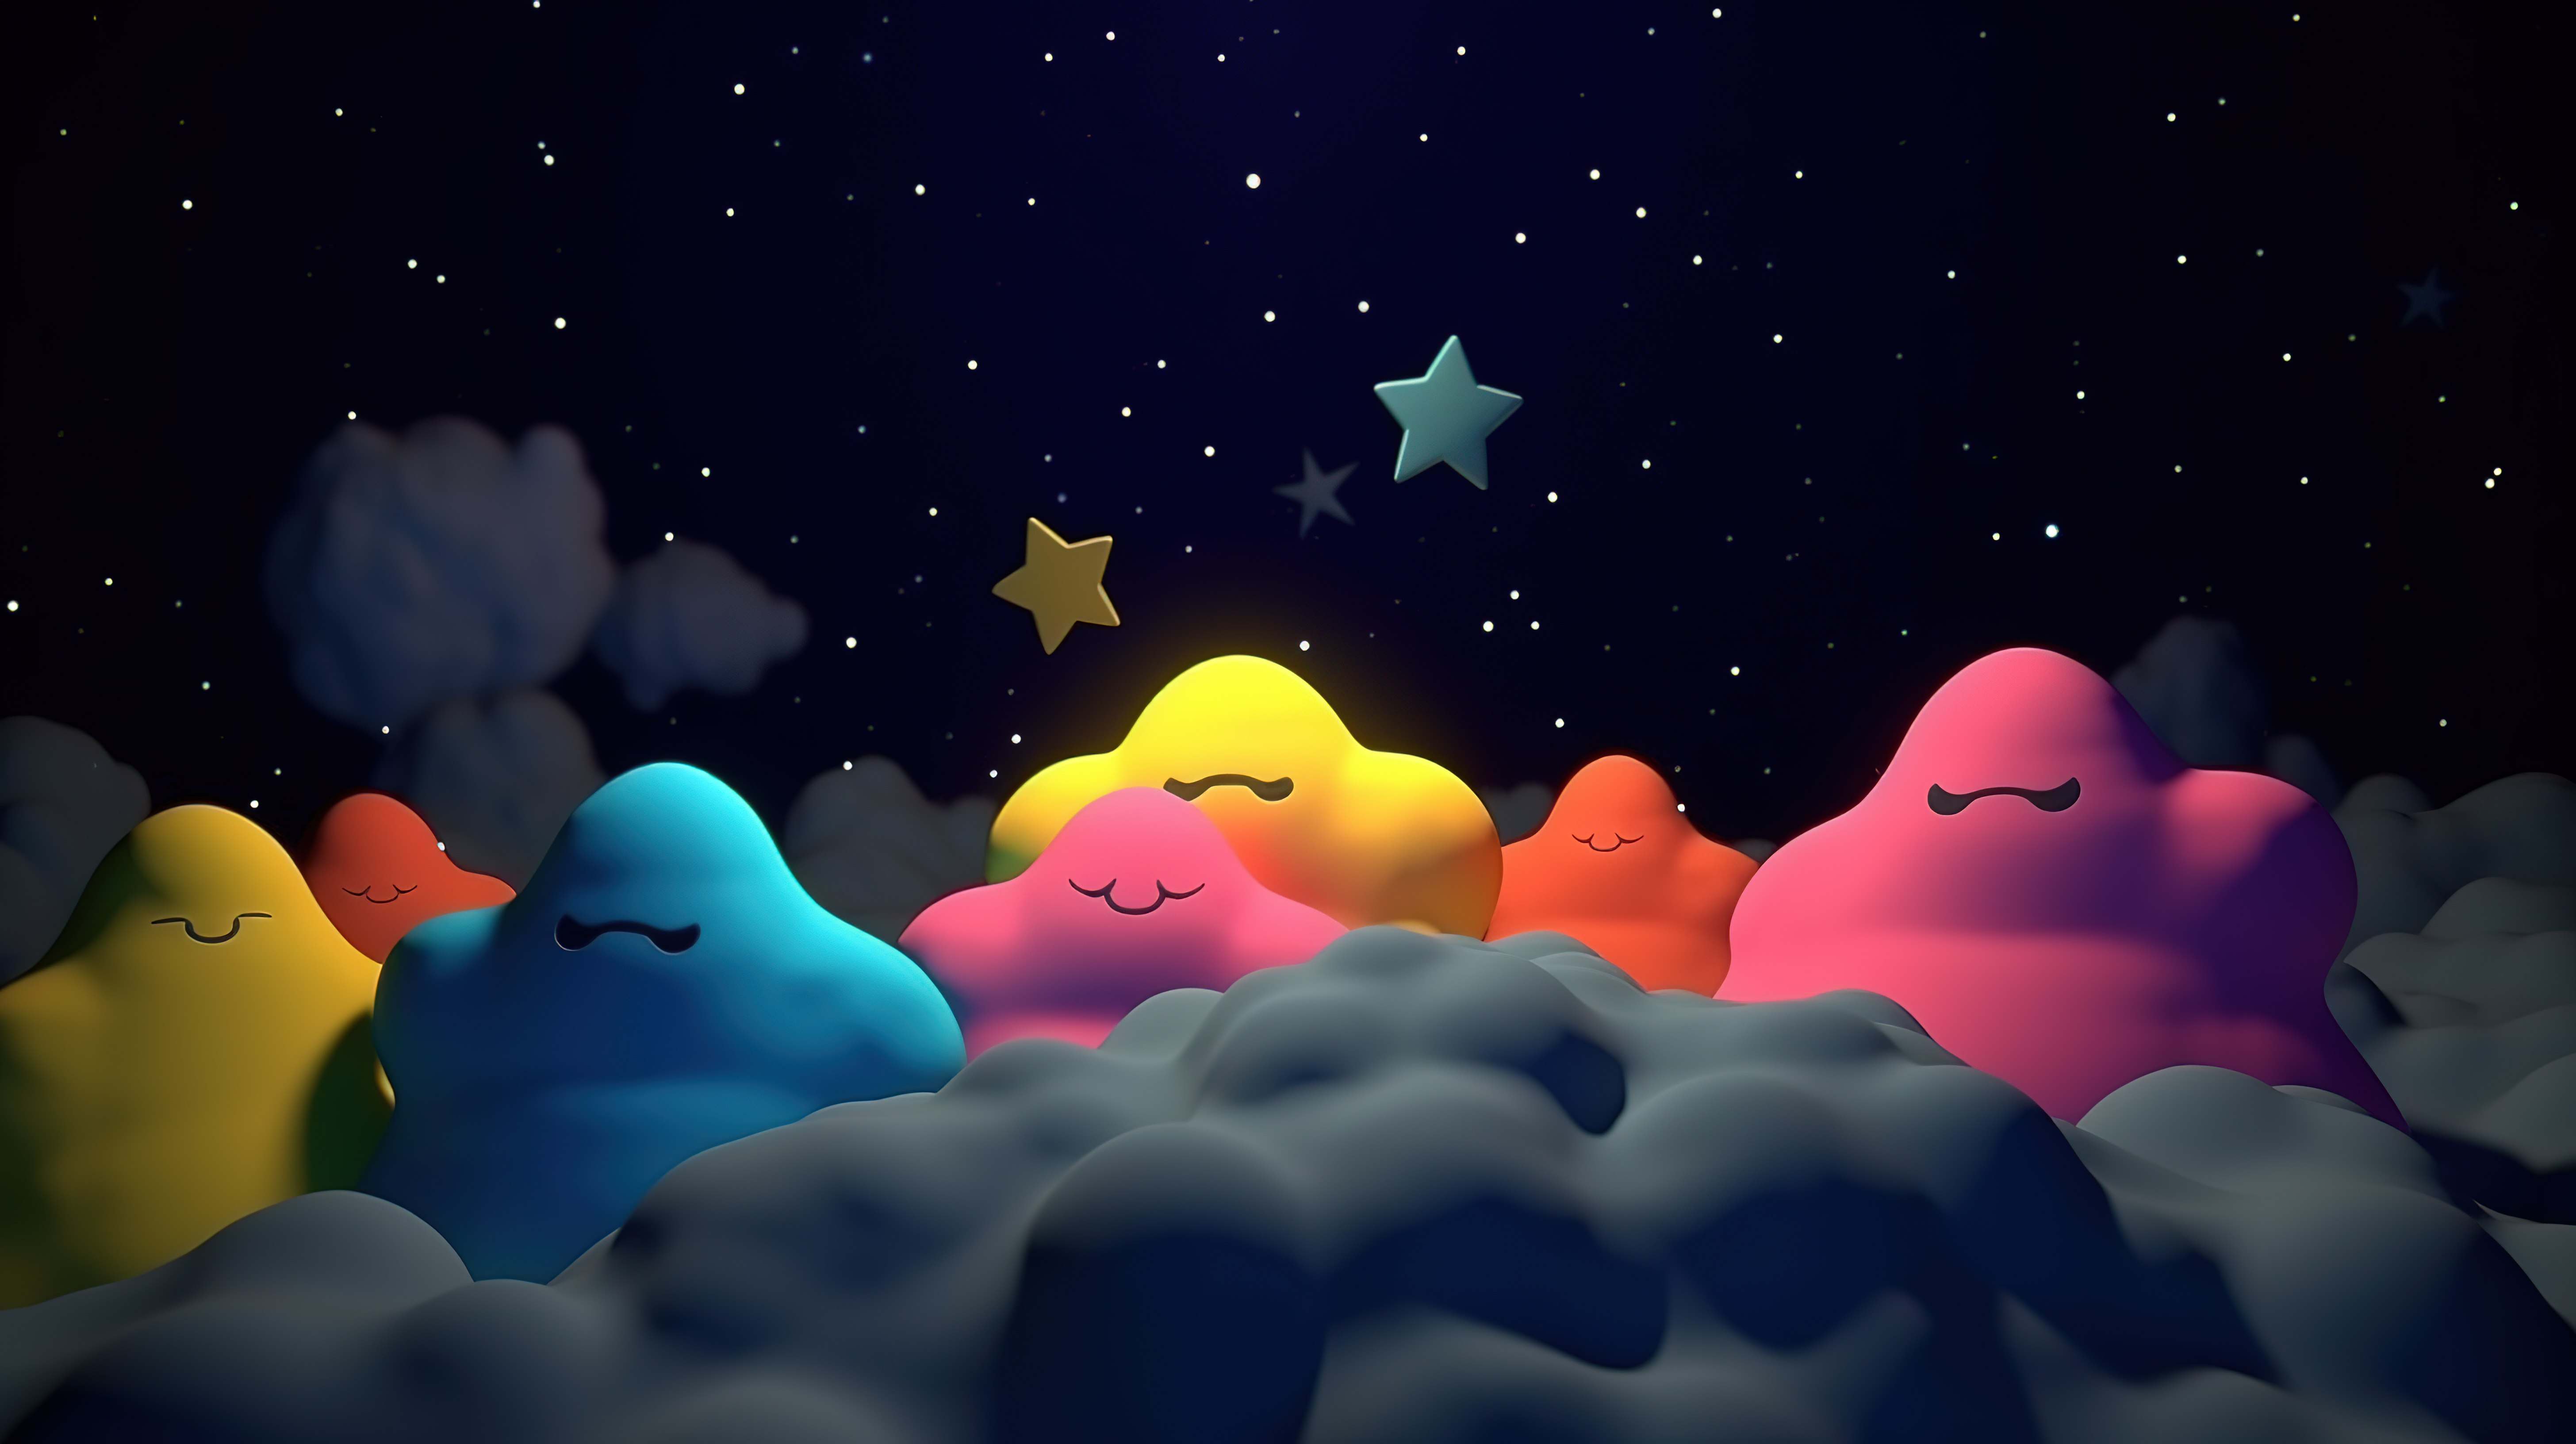 充满活力的夜空与 3d 卡通云彩和五颜六色的星星图片